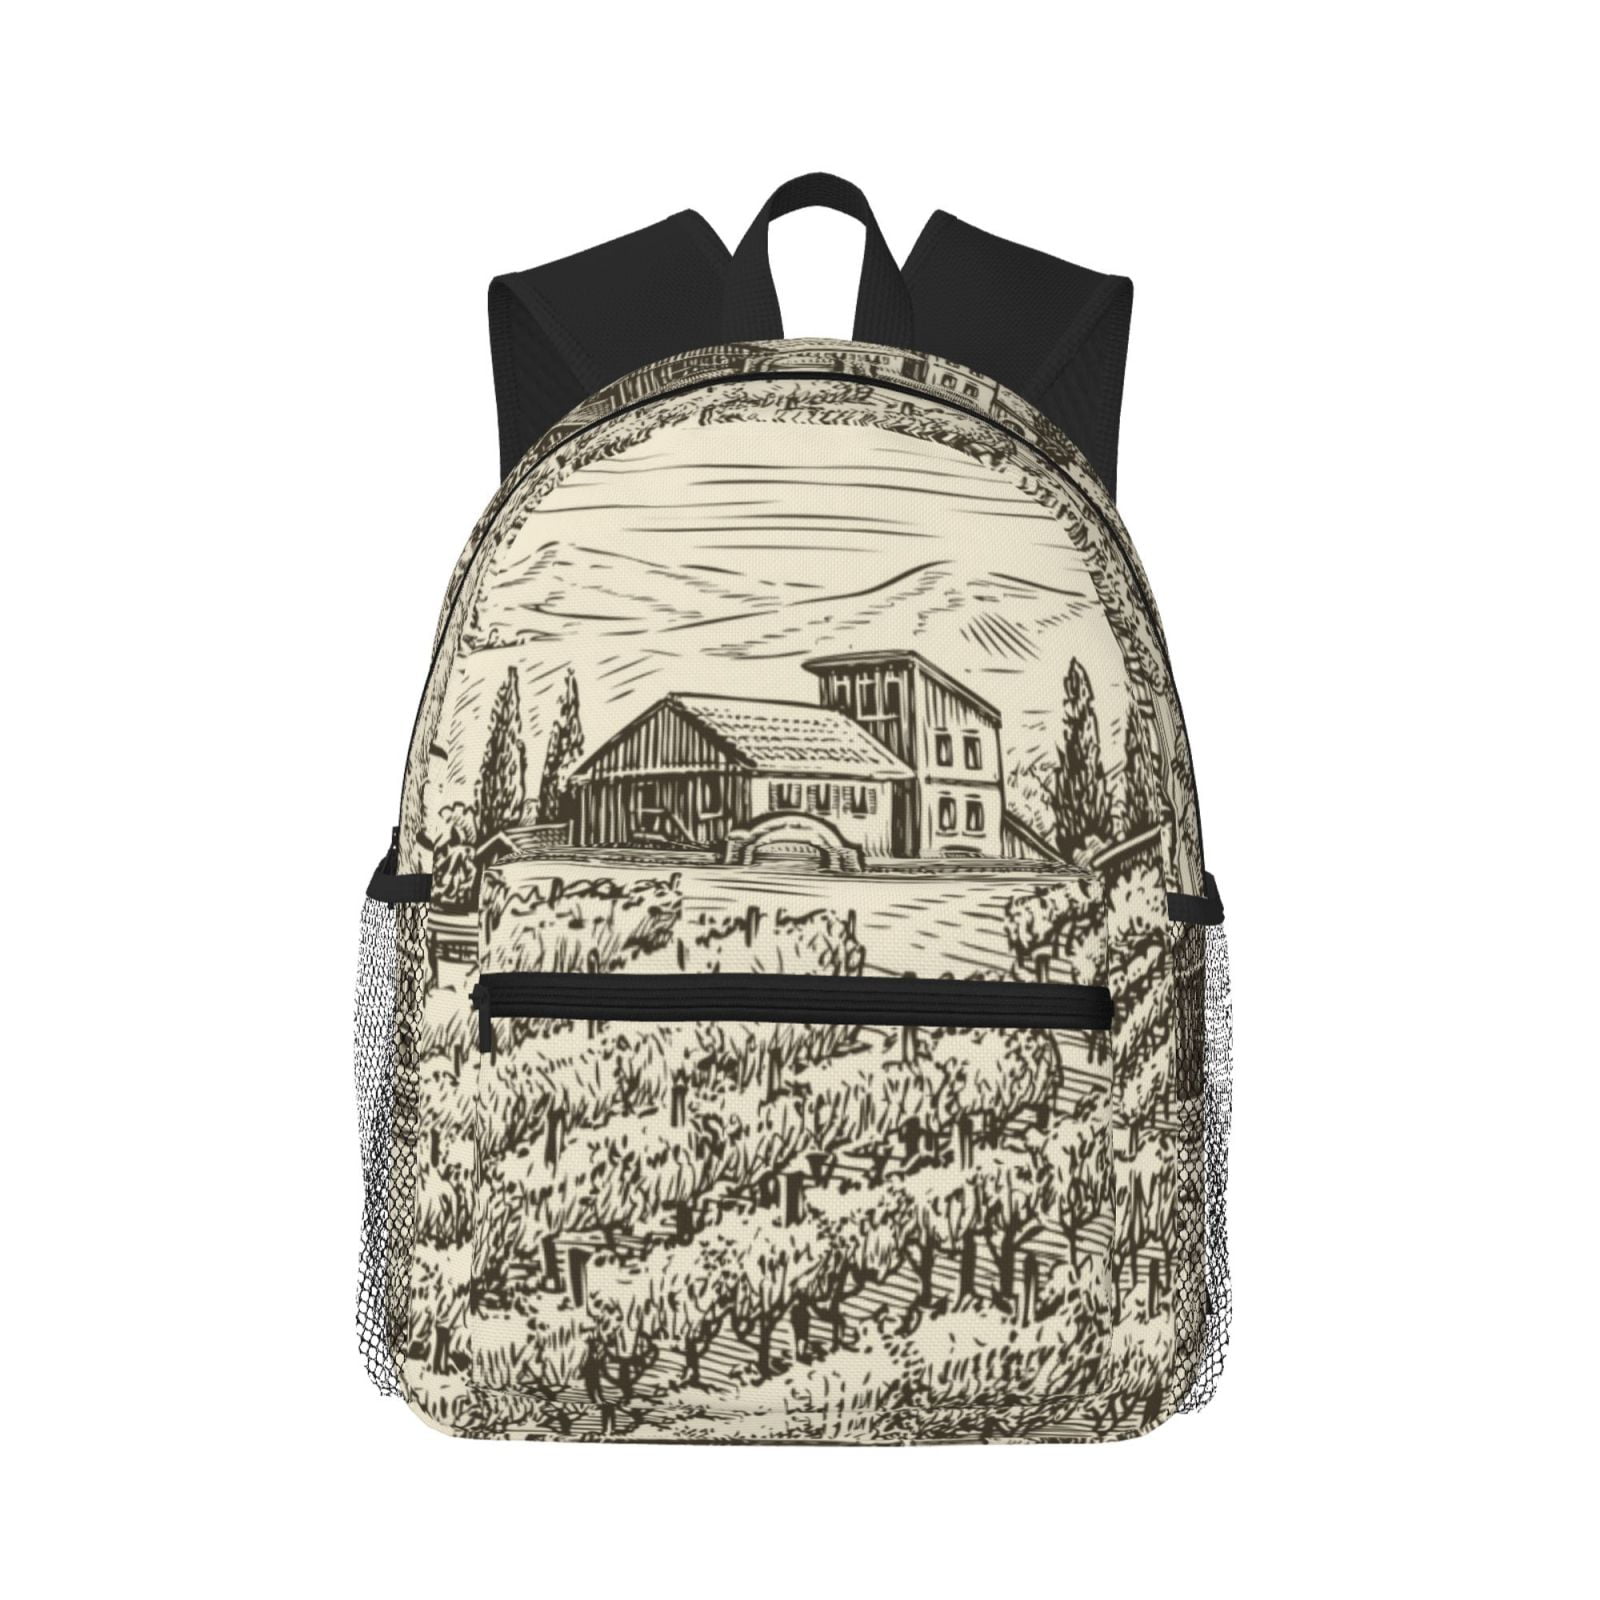 Gaeub Vineyard Landscape School Backpack Waterproof Bookbag for Men ...